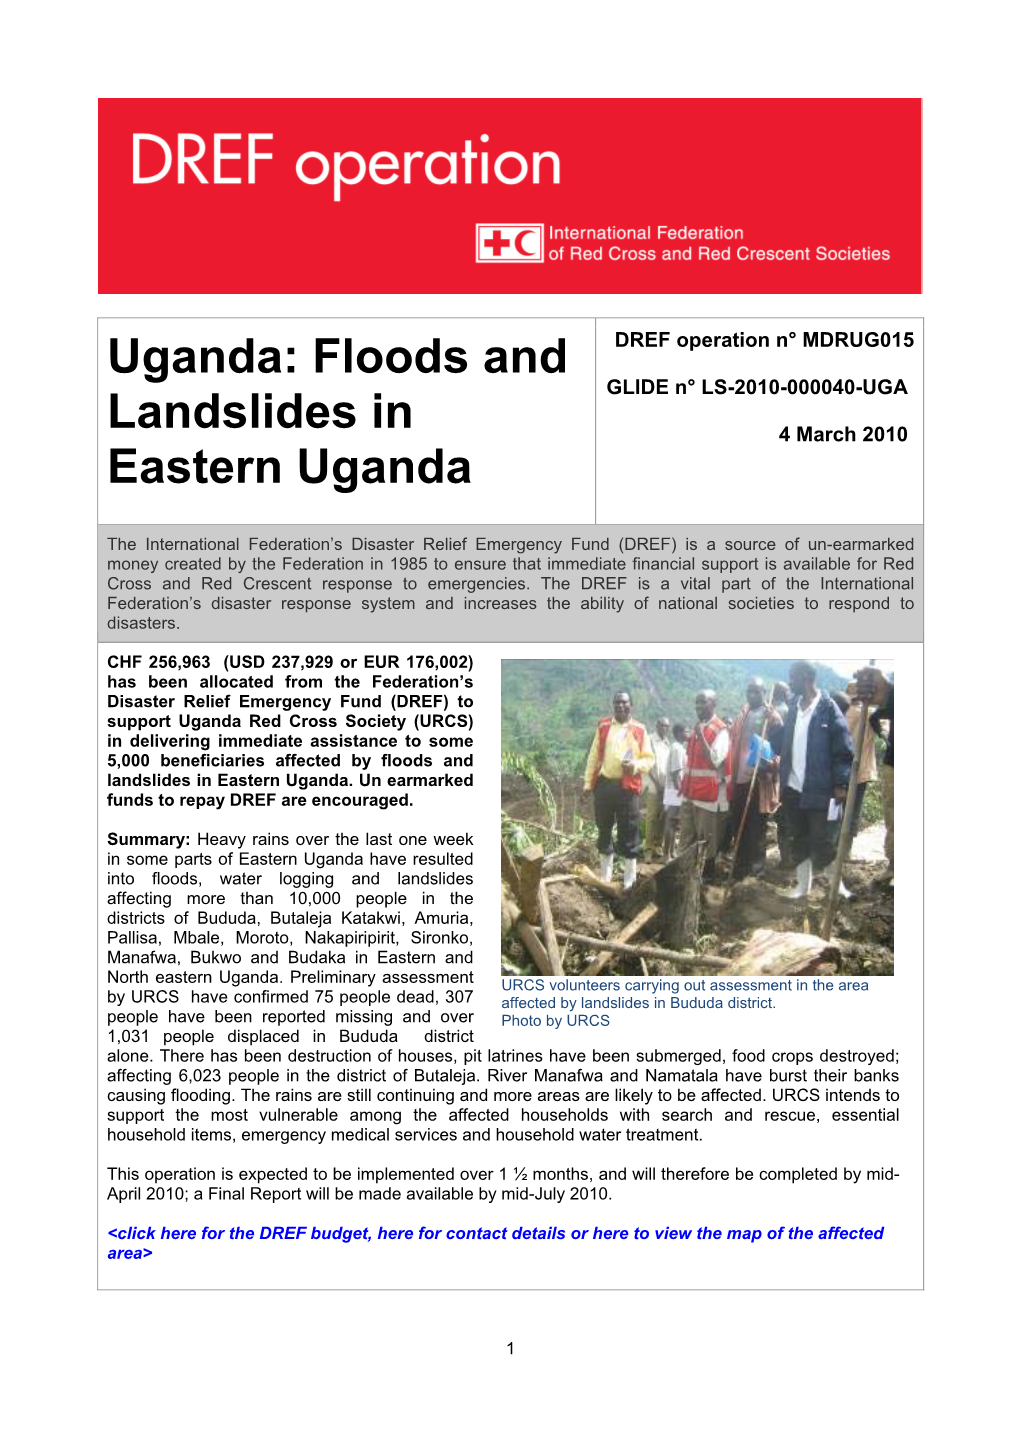 Floods and Landslides in Eastern Uganda